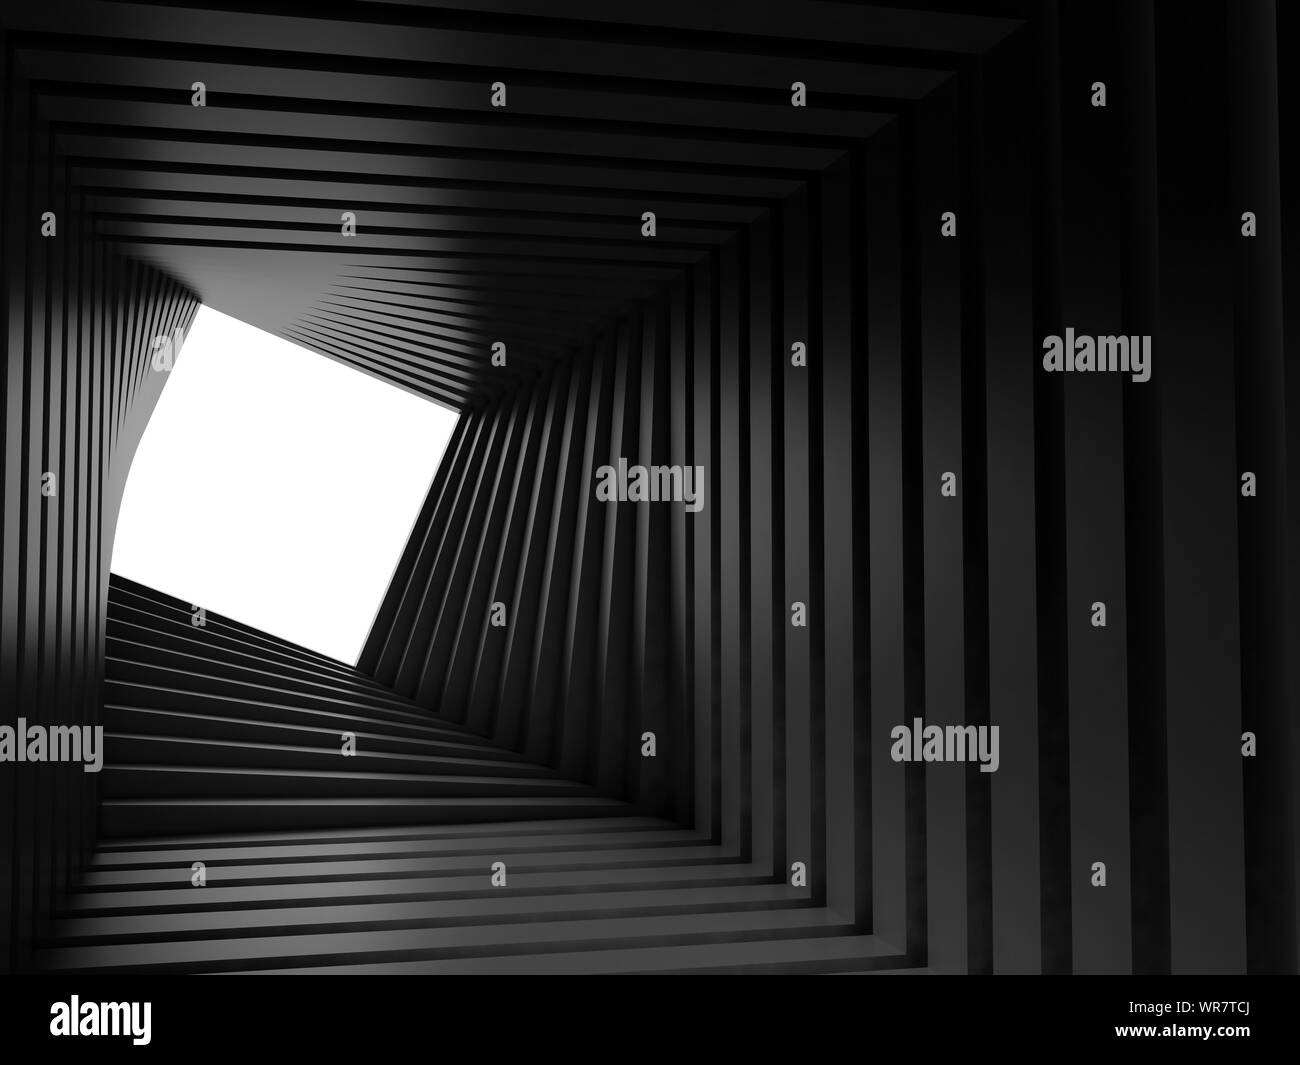 Abstrakte dunklen Tunnel Hintergrund, twisted Interieur mit weißen rechteckigen Fenster am Ende 3D Rendering illustration Stockfoto